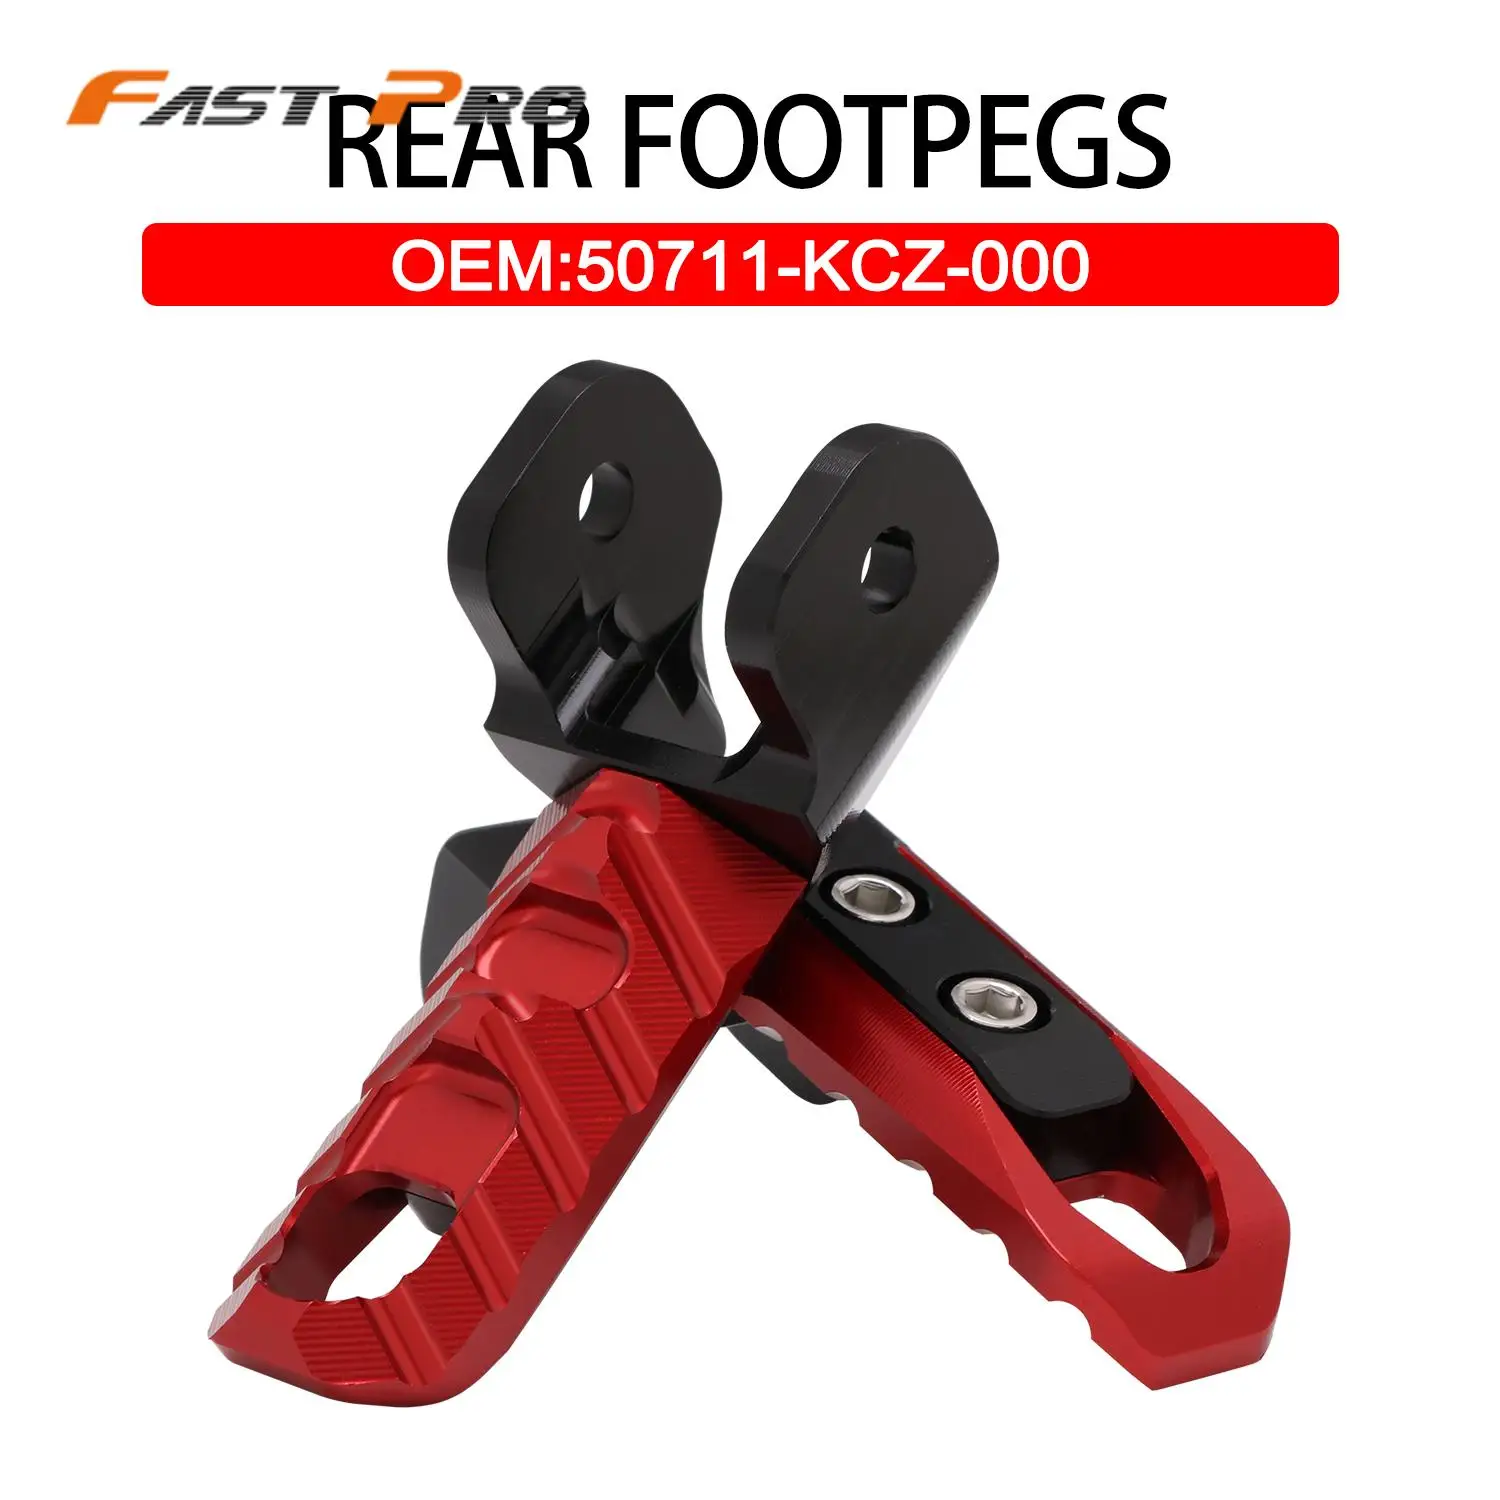 

Motorcycle Aluminum Rear Footpegs Footrests Foot Pegs Rests For Honda CRF230L CRF230M XR230 XR250 XR400 MOTARD BAJA Dirt Bike